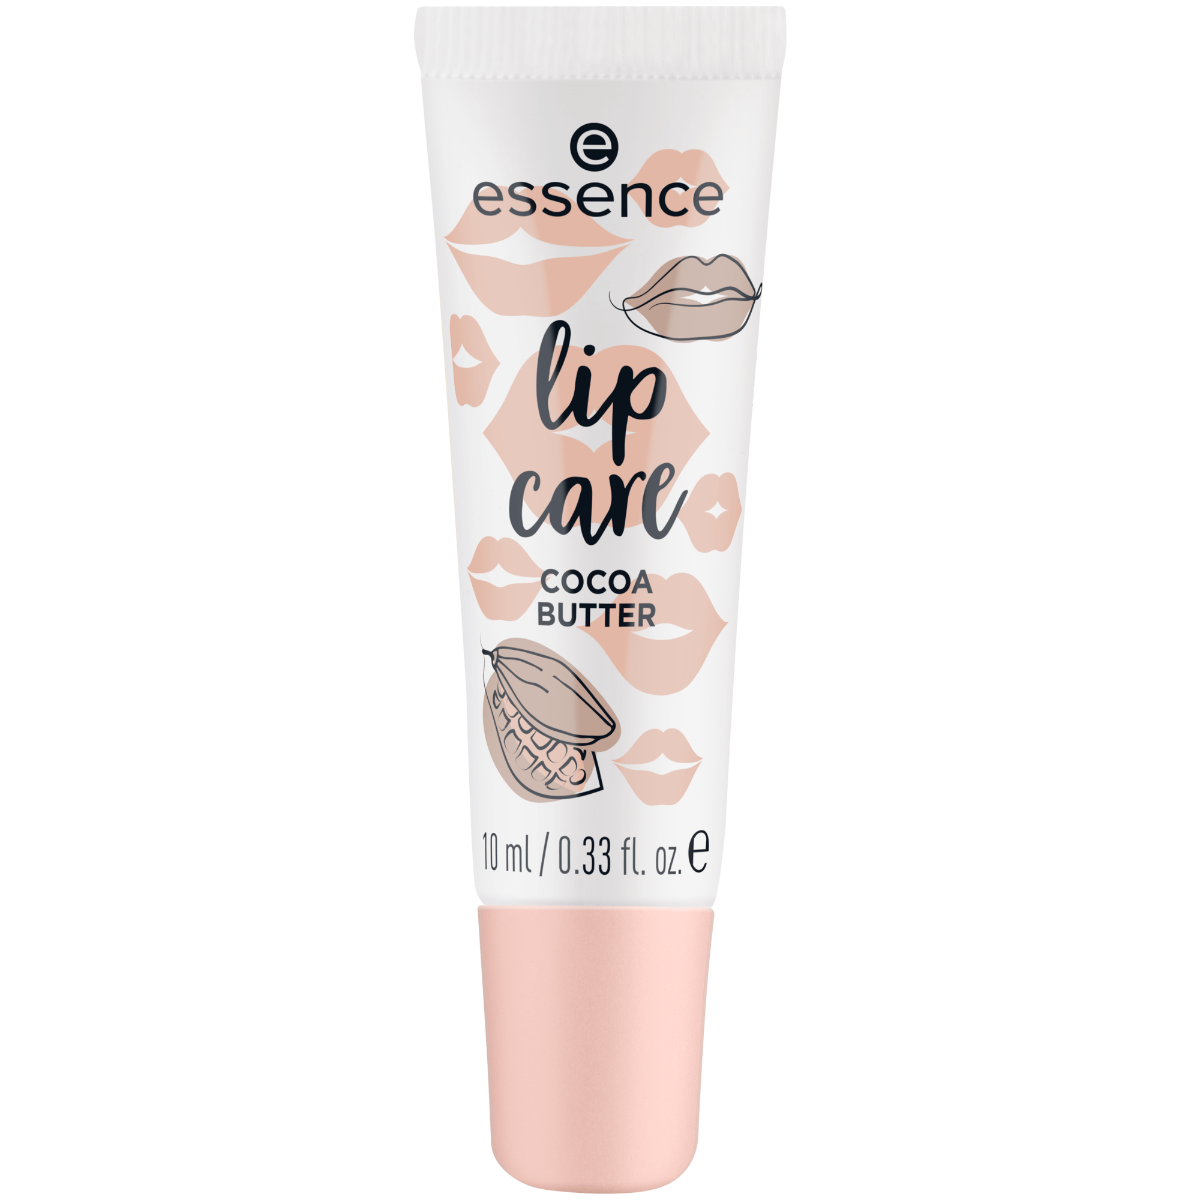 Бальзам для губ Essence Lip Care, 10 мл бальзам для губ vaseline lip essence вишня 10 мл